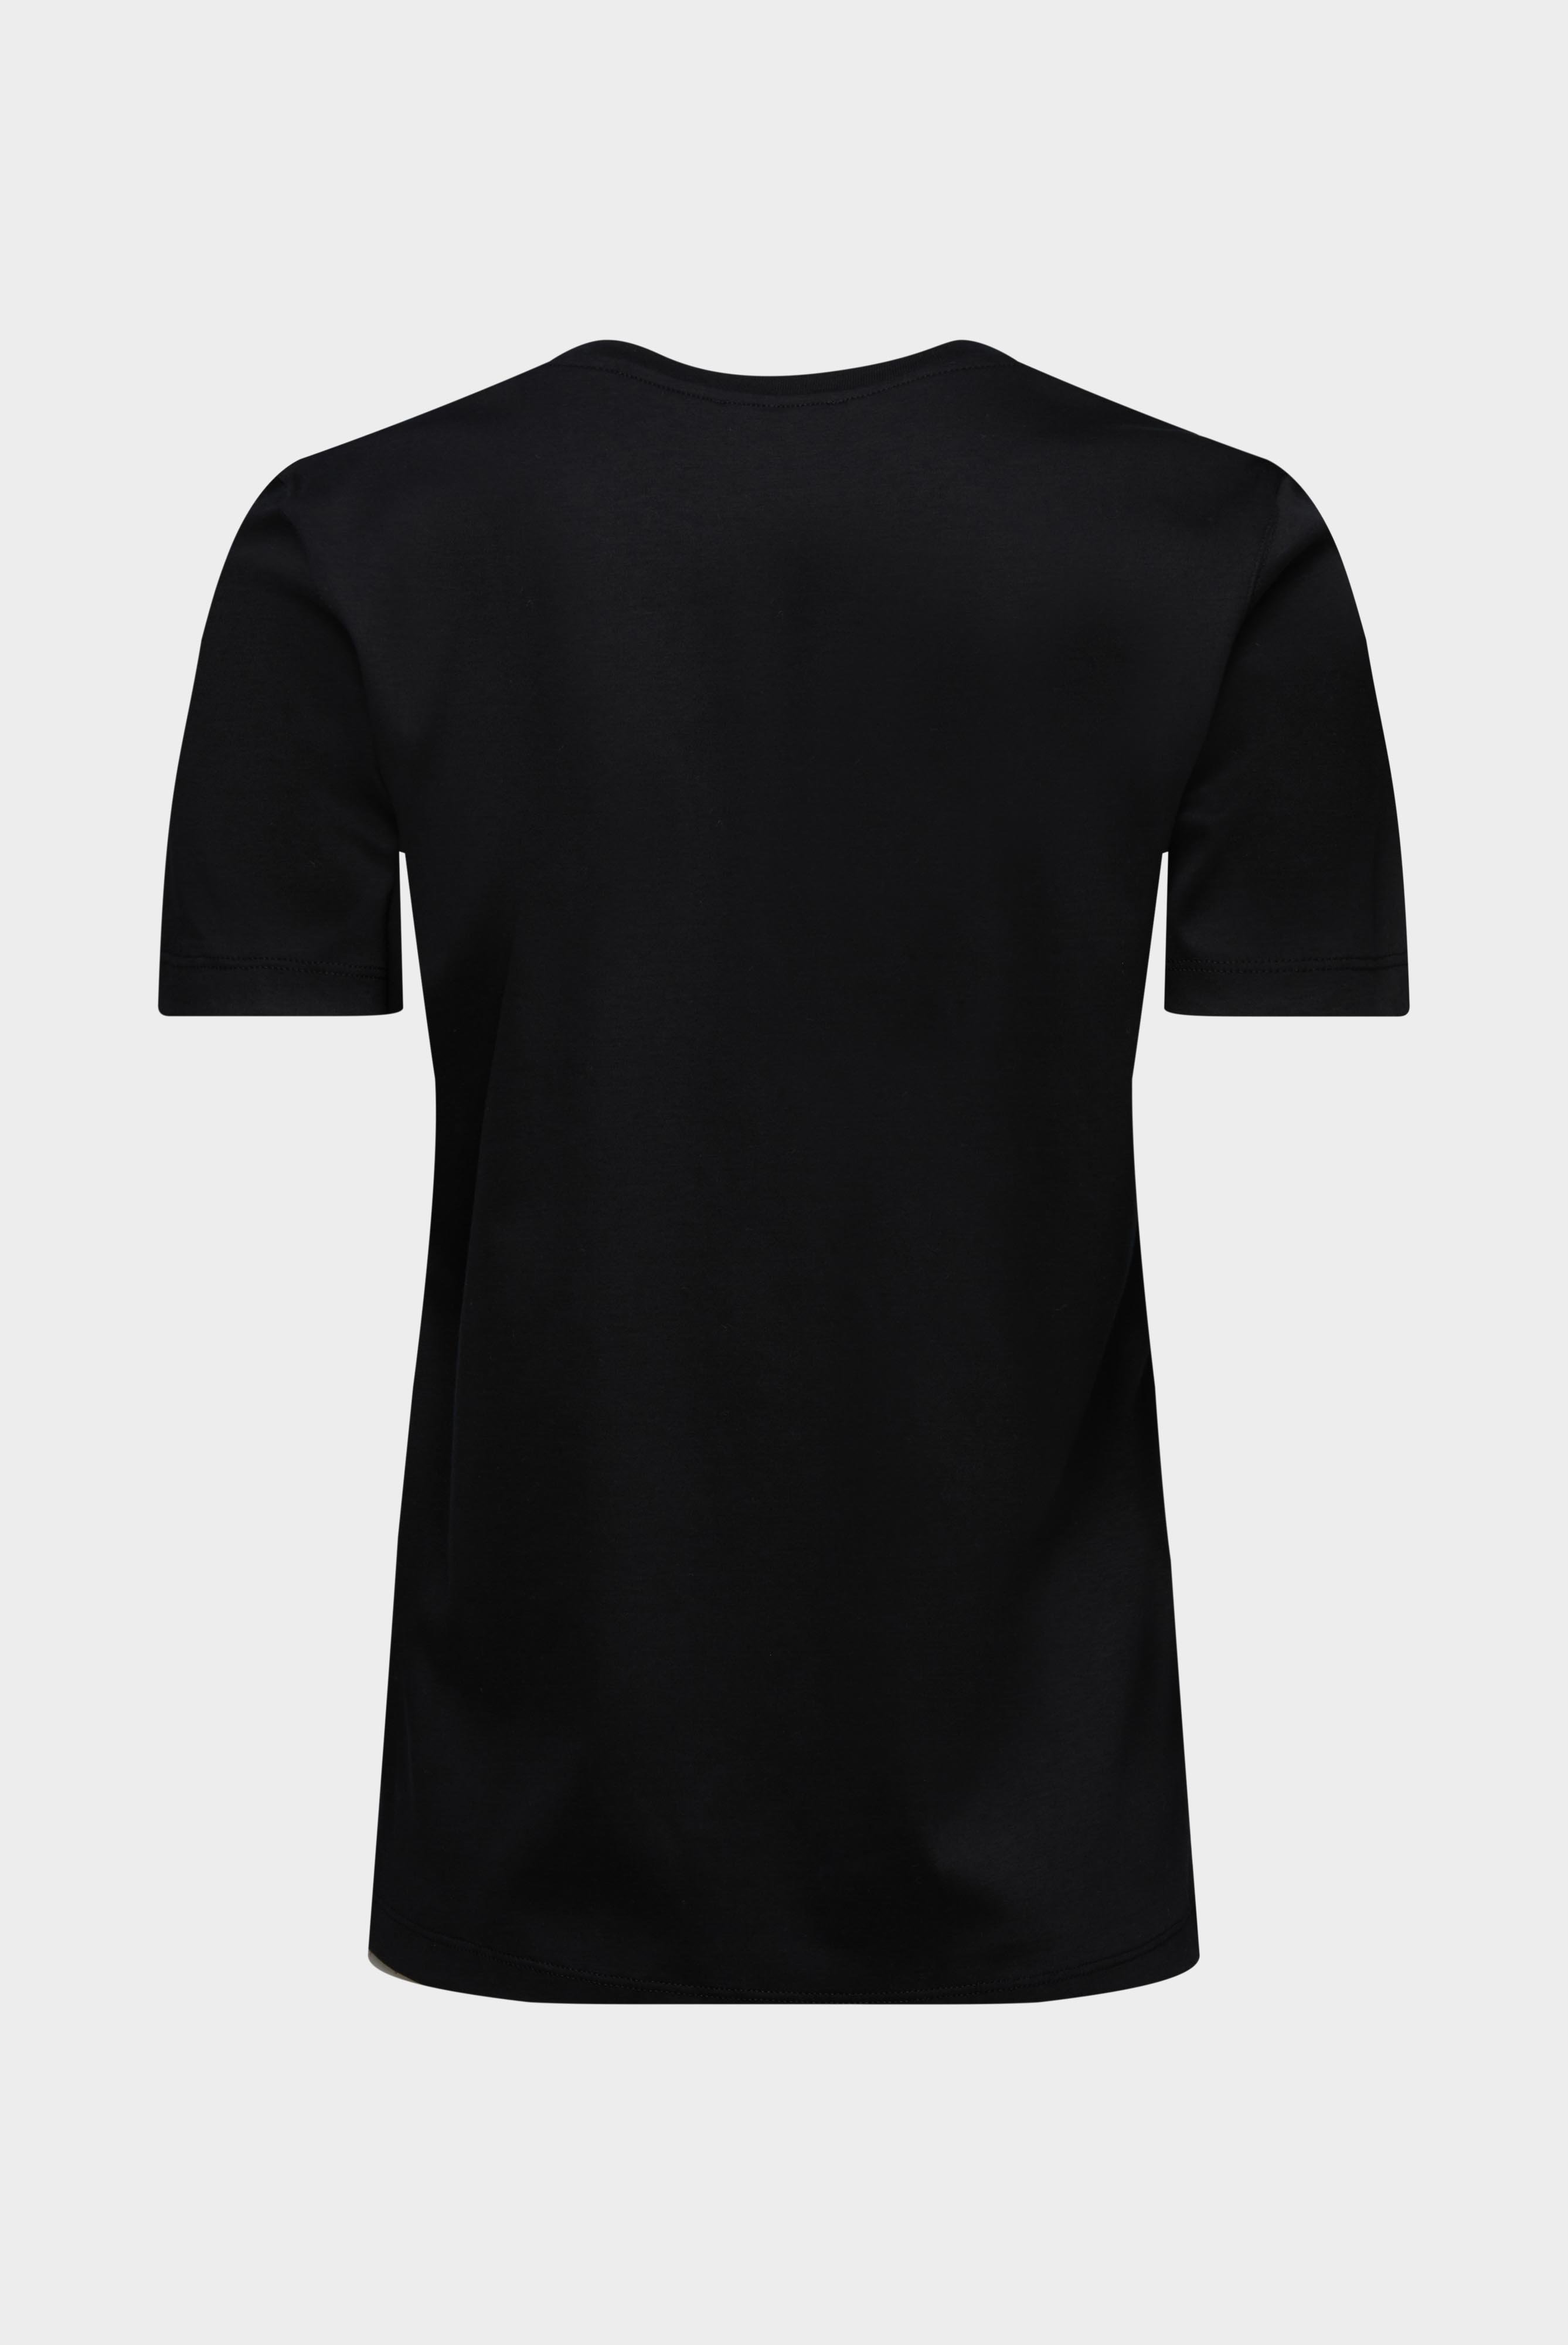 Tops & T-Shirts+Jersey T-Shirt+05.6384.18.180031.099.42